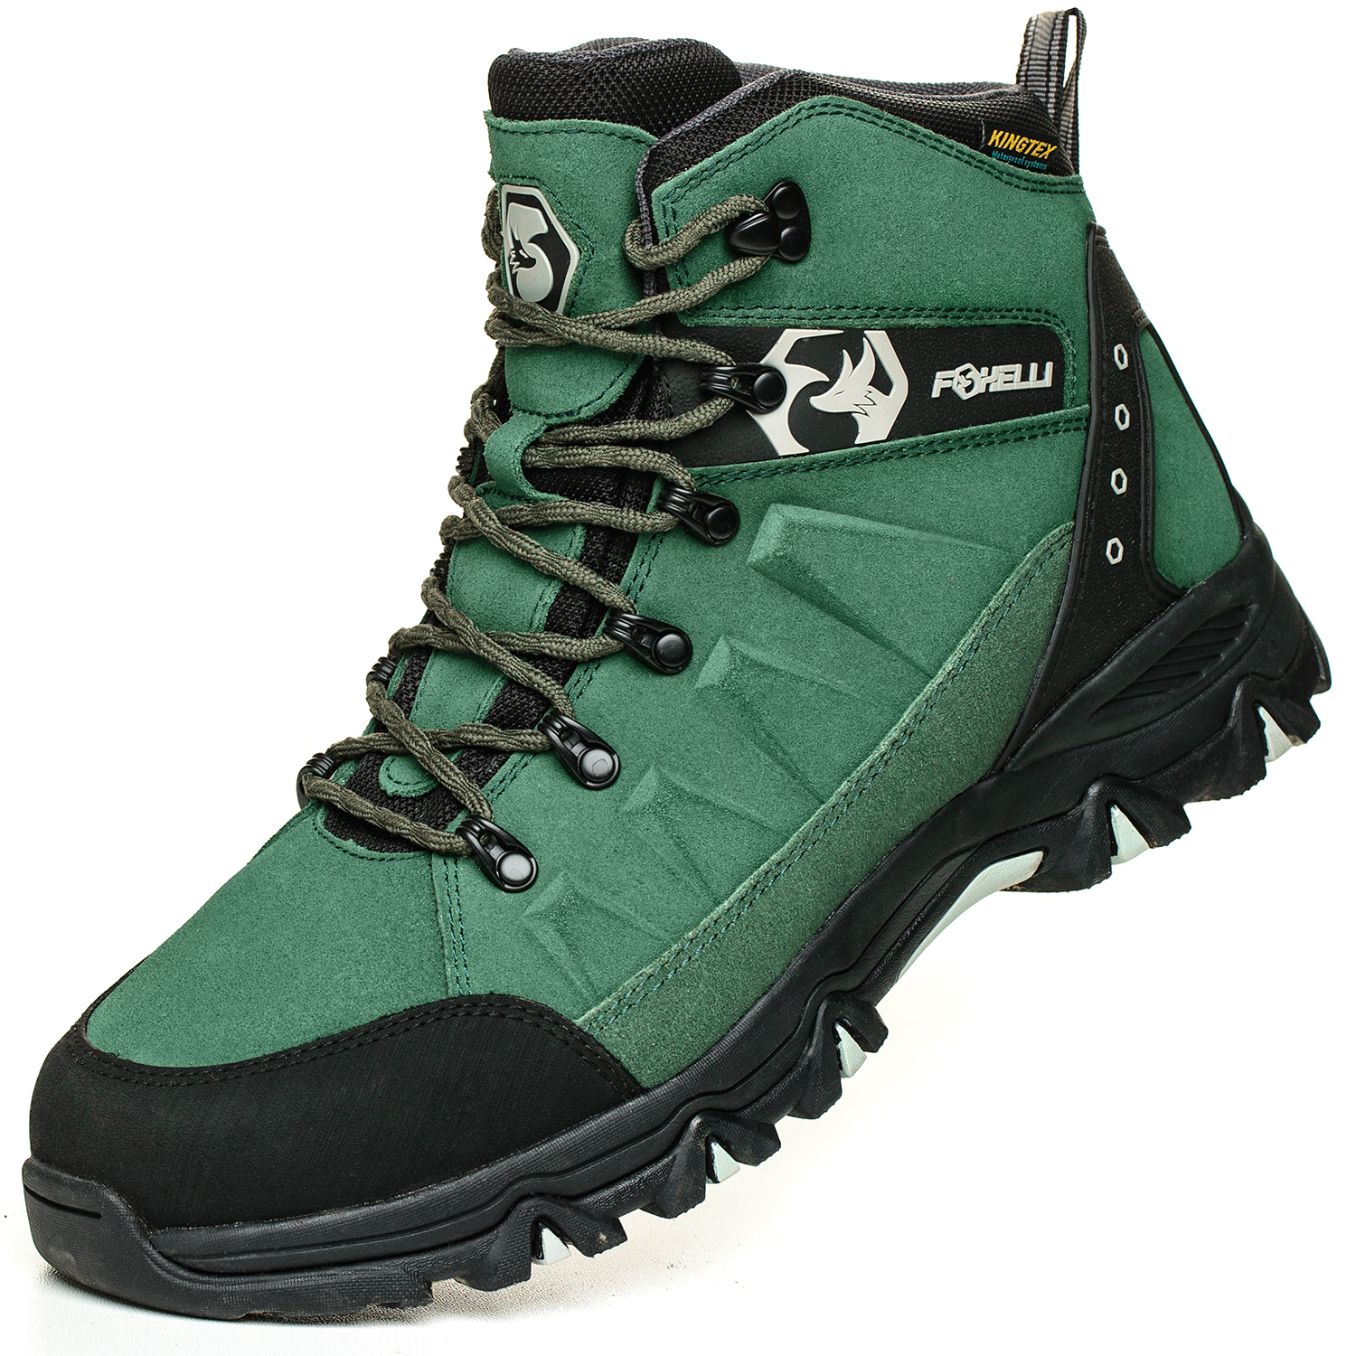 mens outdoor boots waterproof